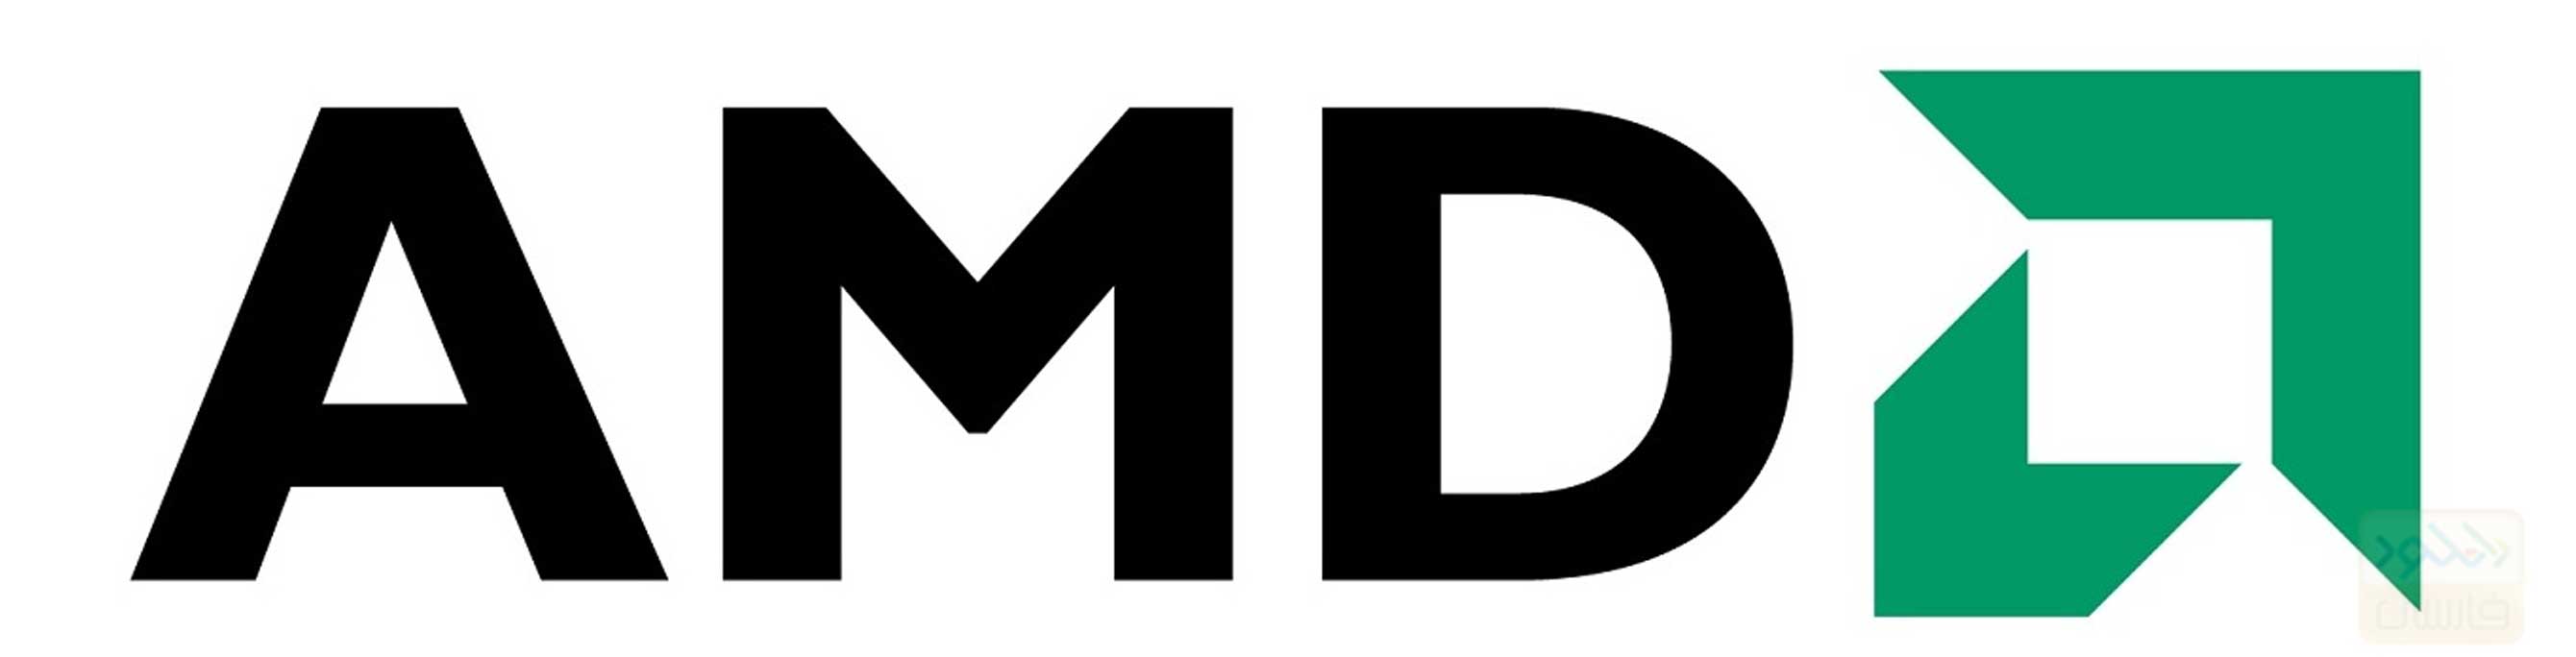 دانلود کتاب معرفی پردازنده های AMD